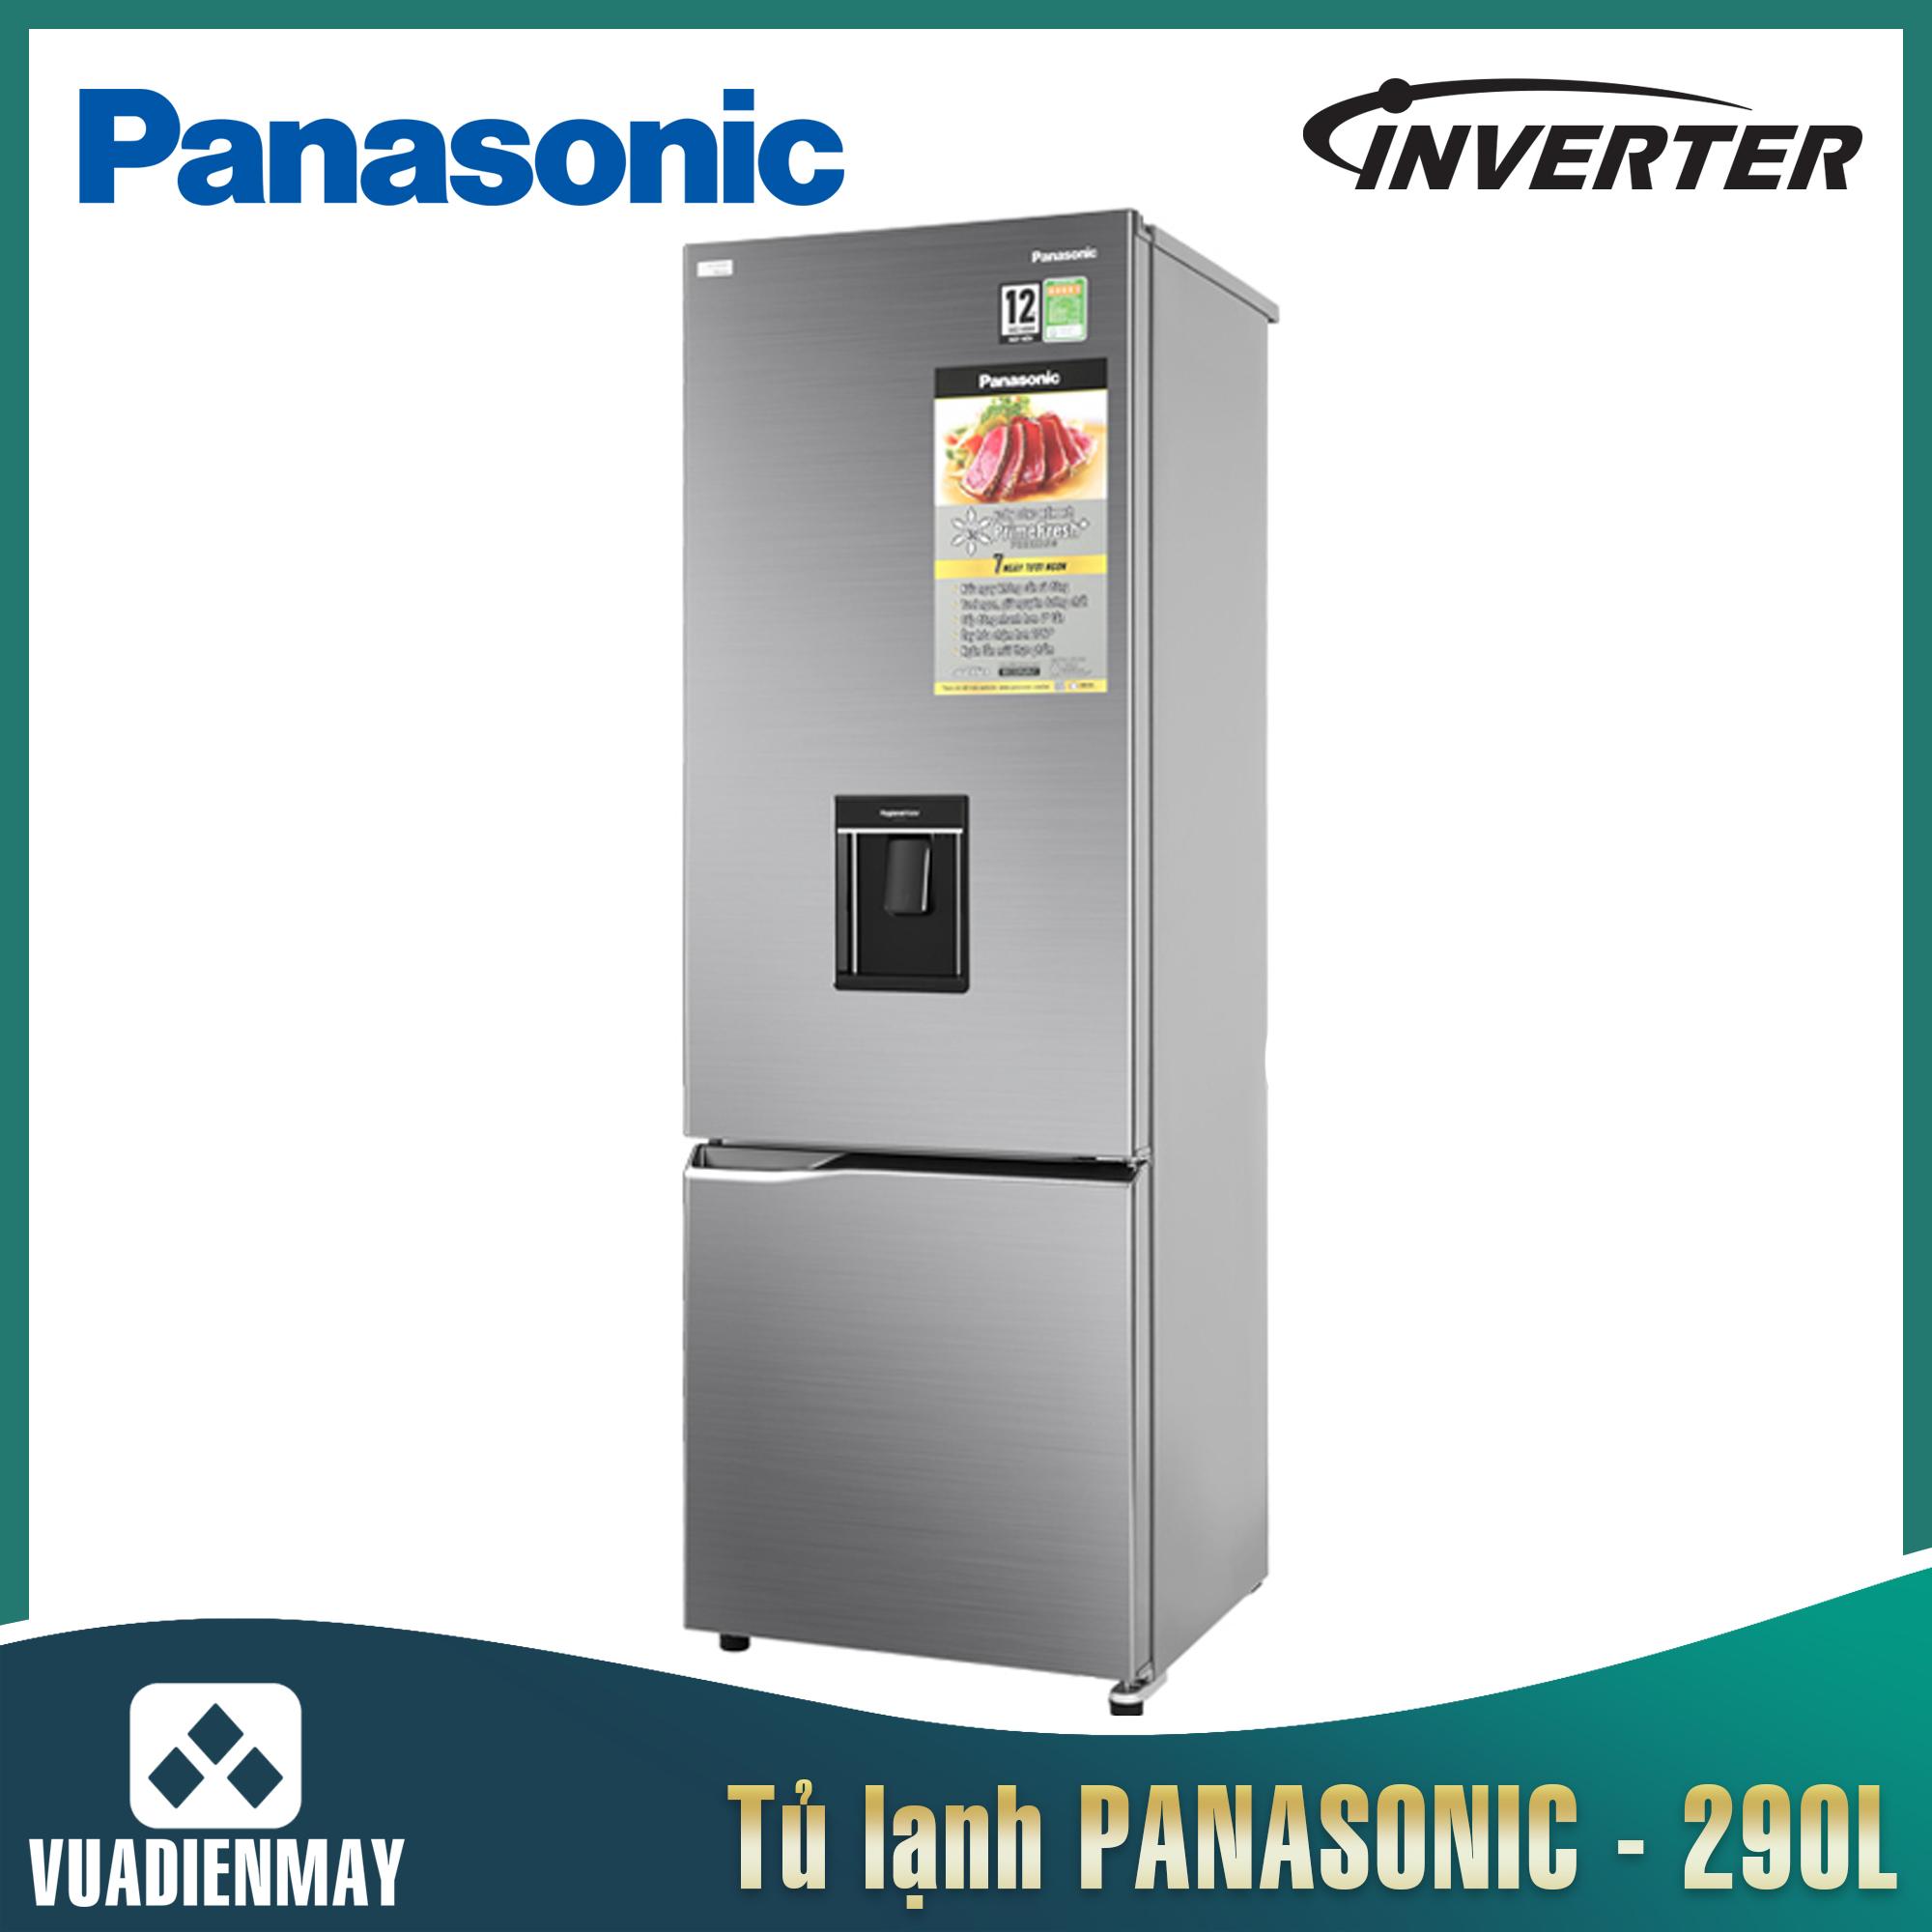 Tủ lạnh Panasonic 290 lít 2 cửa Inverter màu bạc